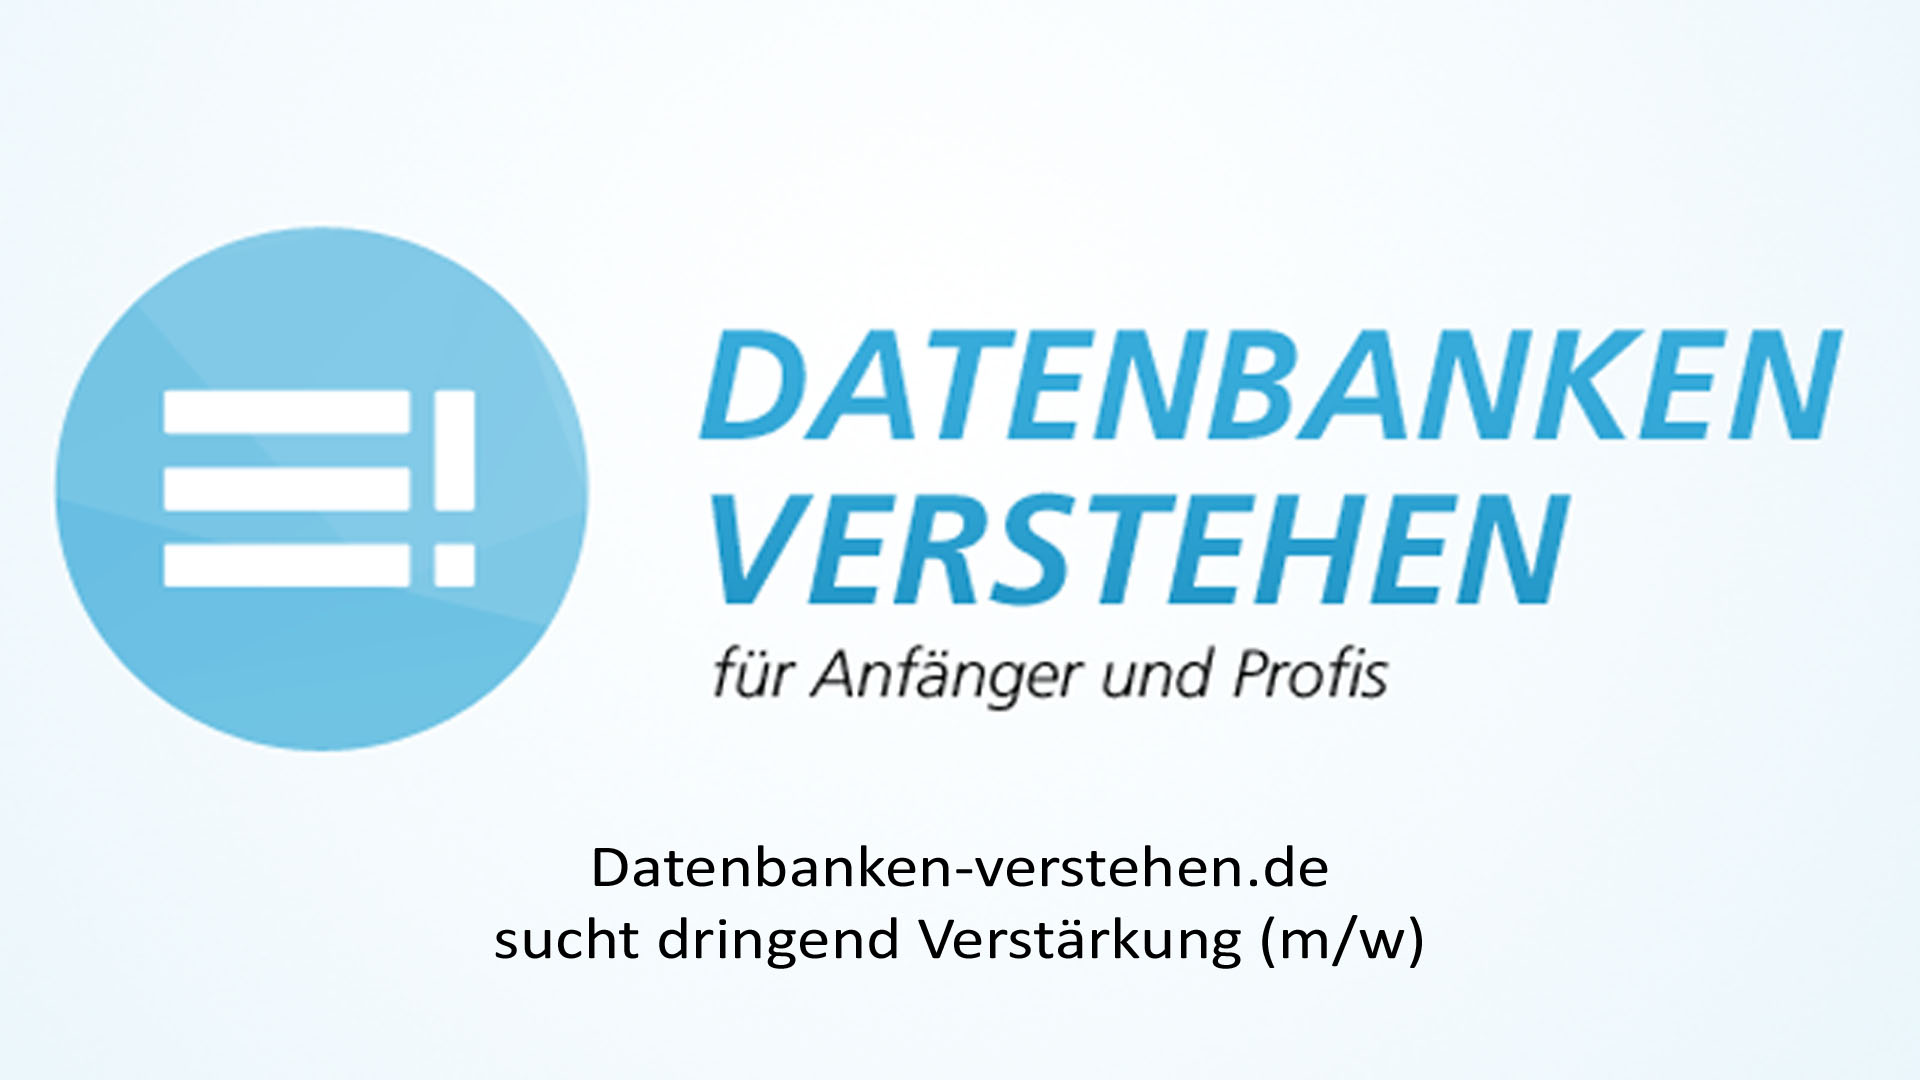 Datenbanken-verstehen.de sucht dringend Verstärkung (m/w) | Datenbank Blog